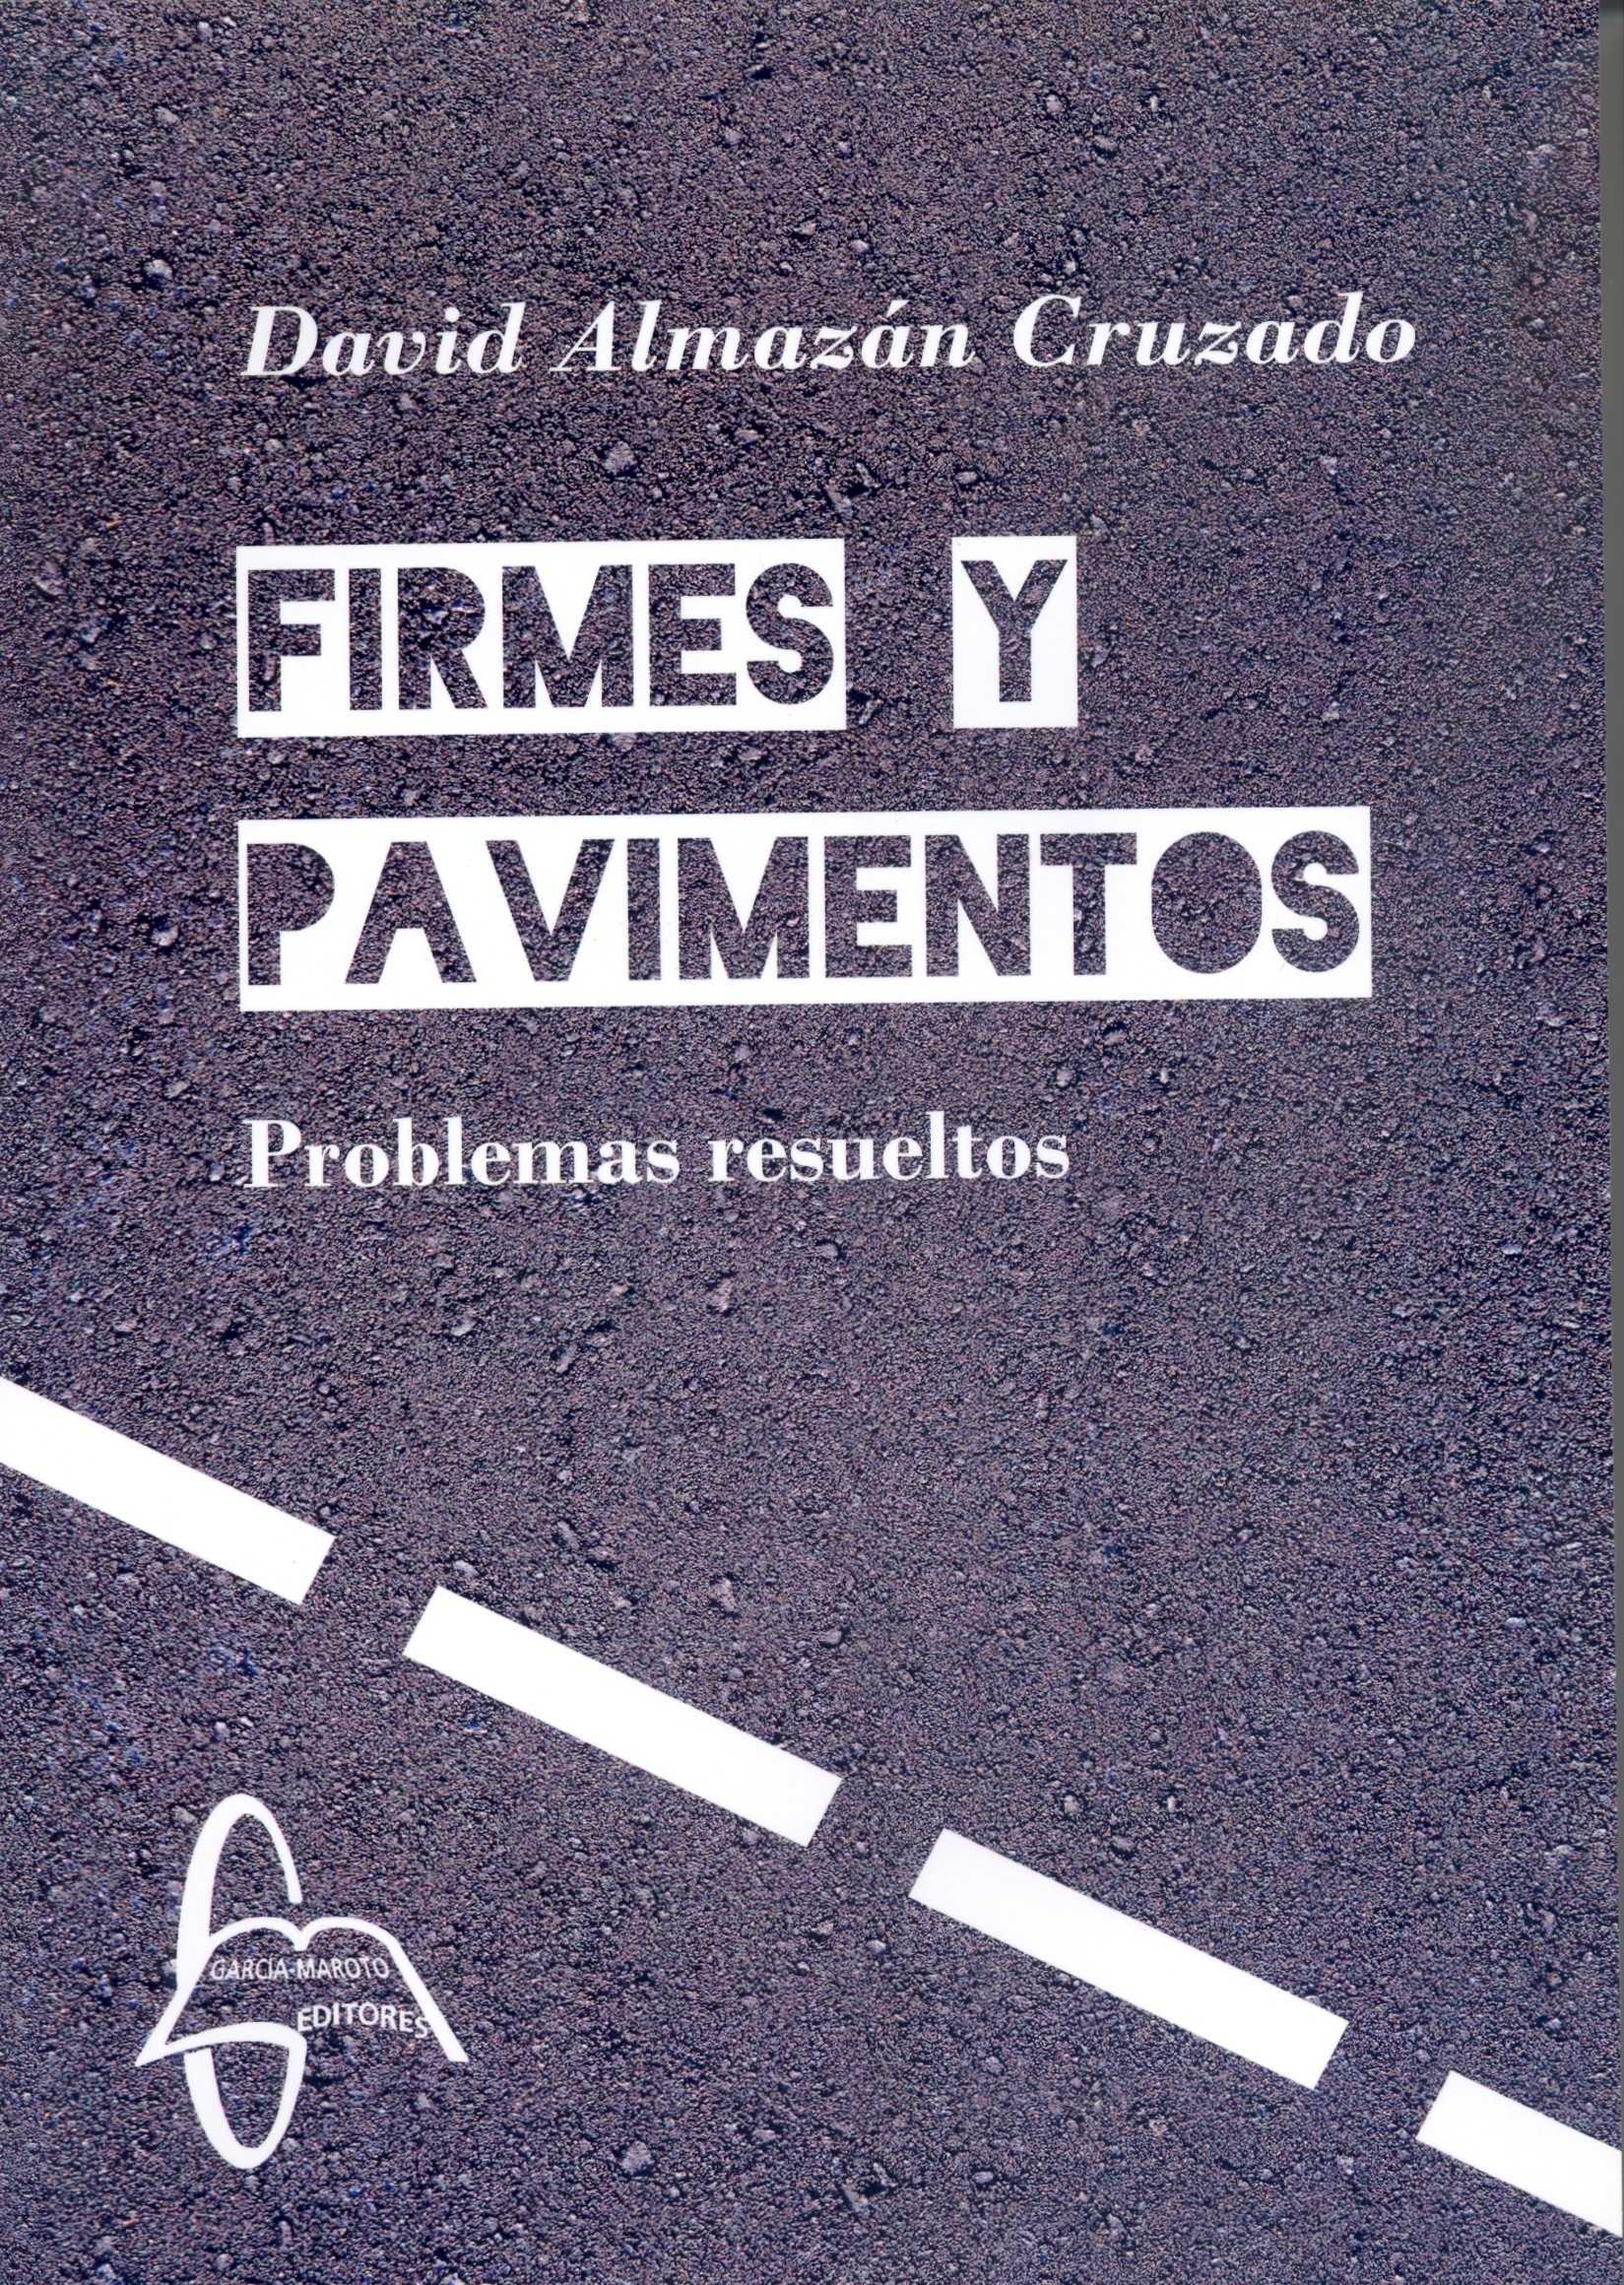 FIRMES Y PAVIMENTOS "PROBLEMAS RESUELTOS"